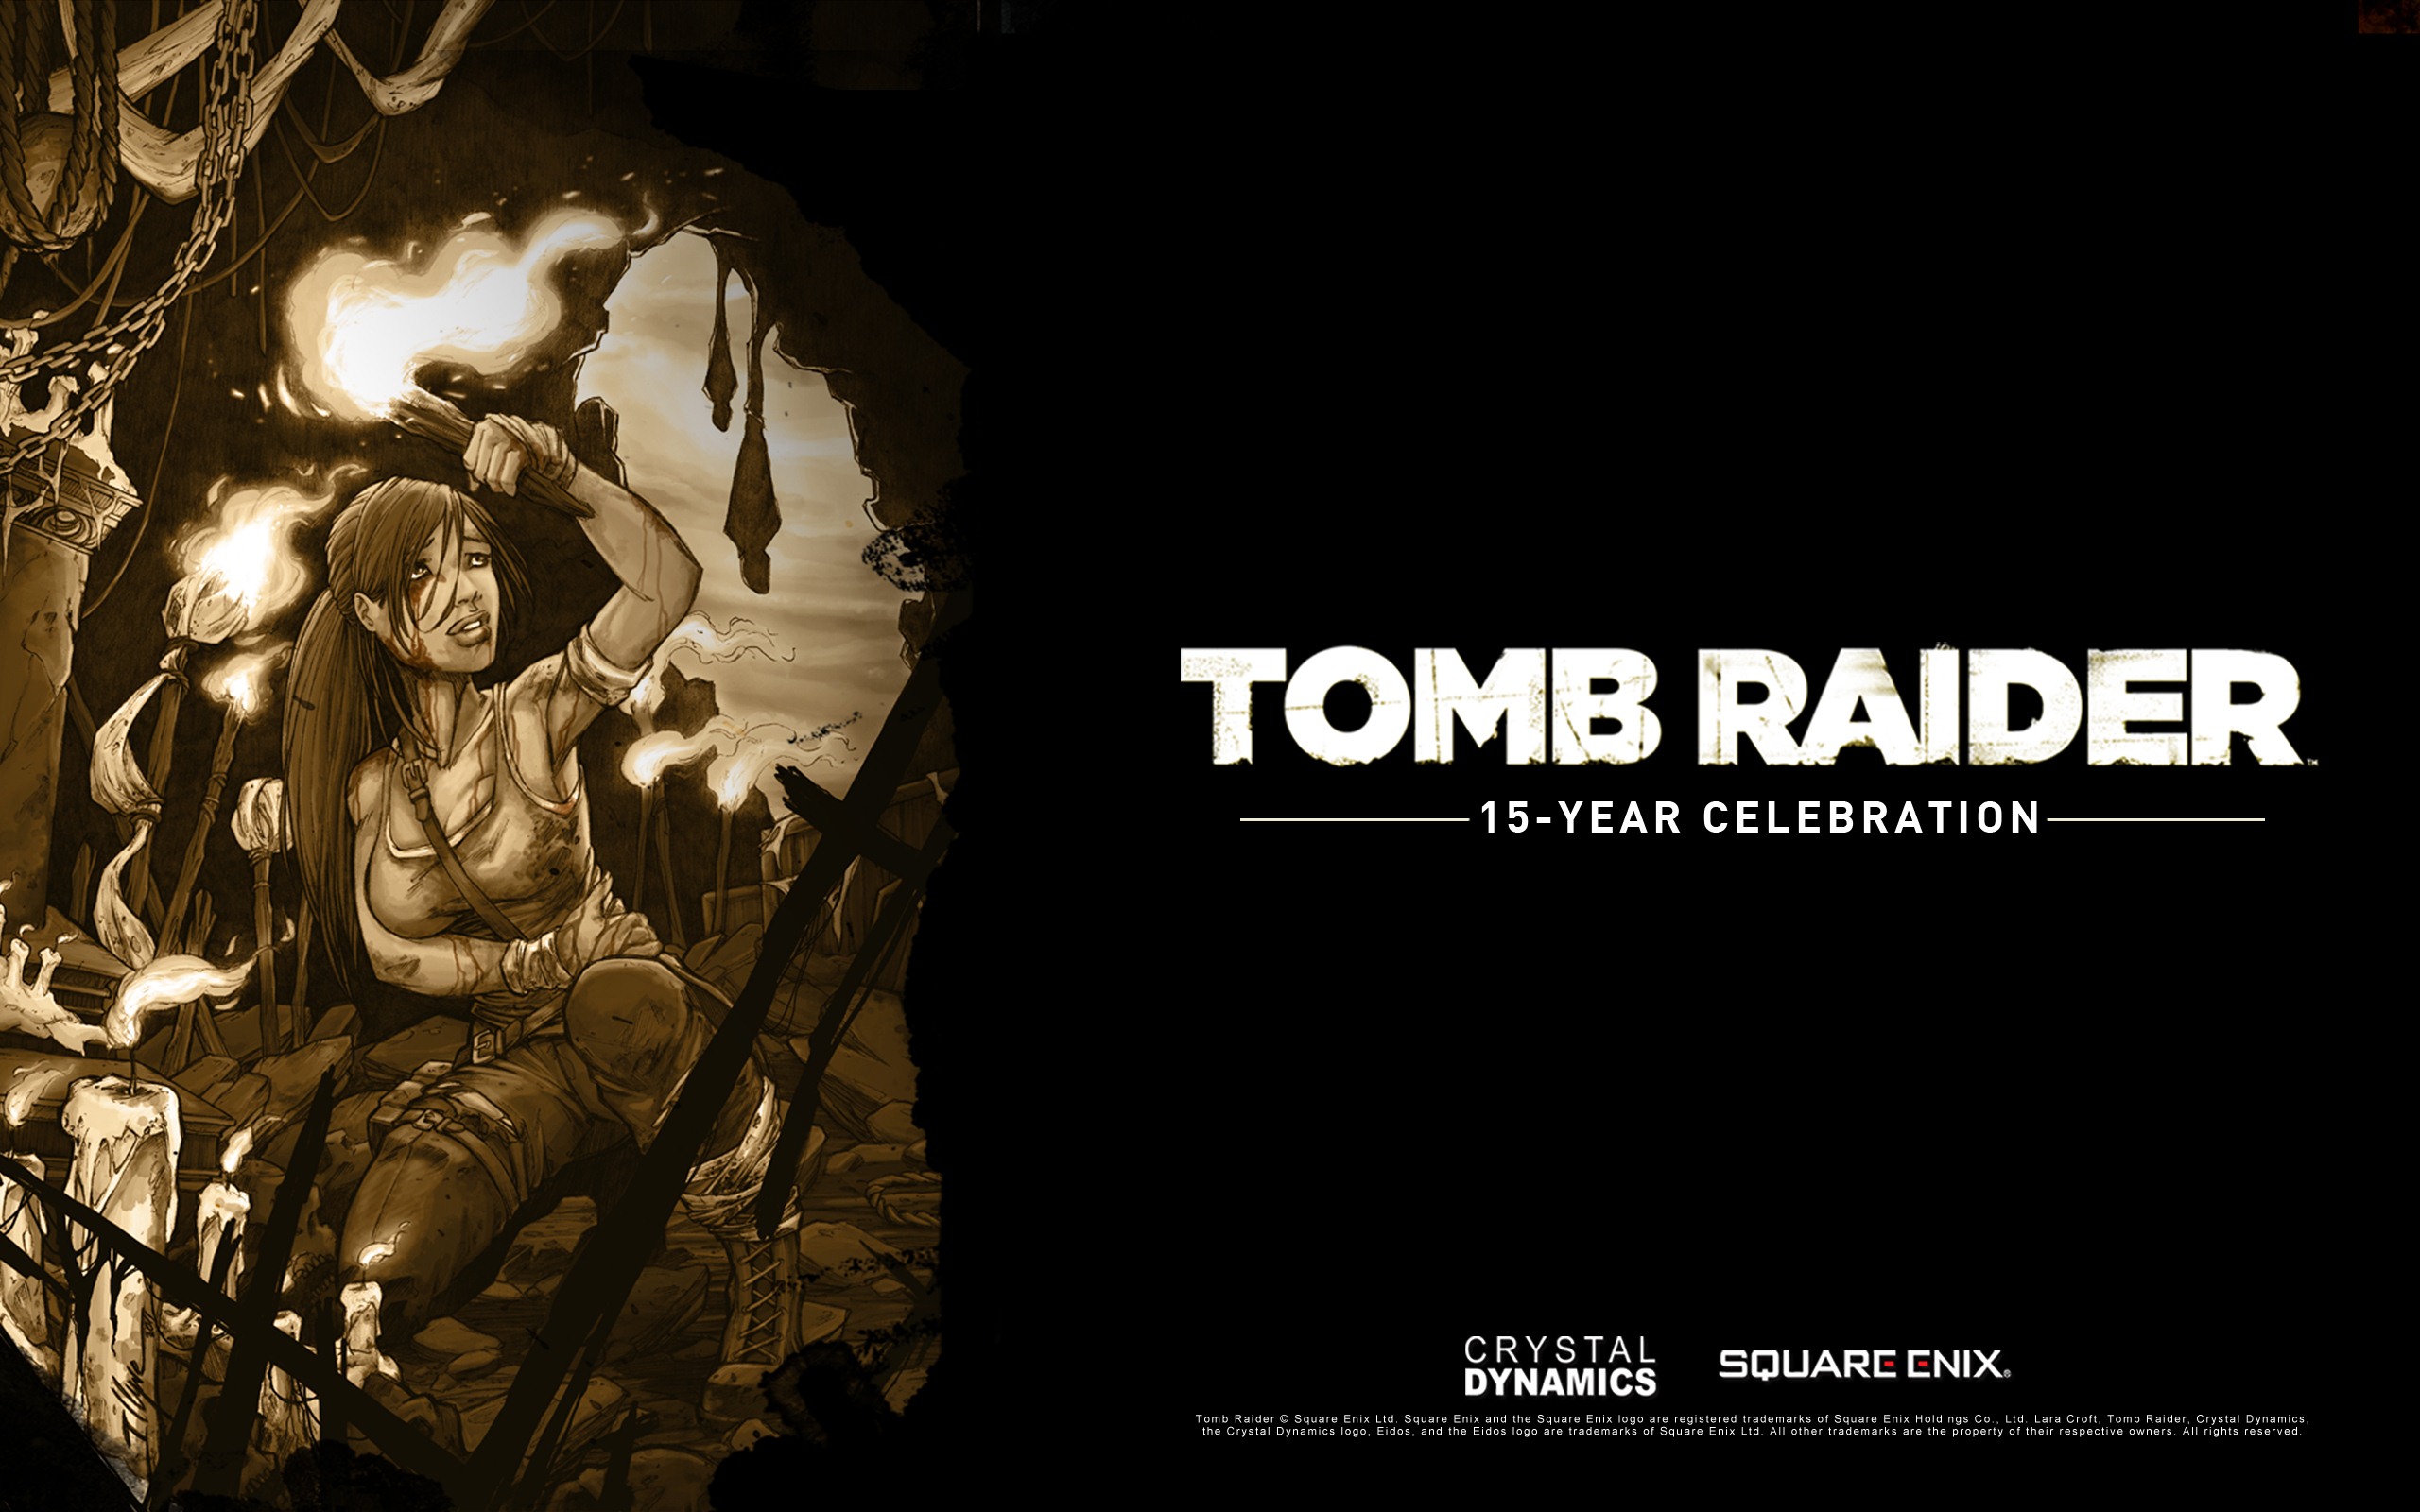 Tomb Raider 15-Year Celebration 古墓丽影15周年纪念版 高清壁纸6 - 2560x1600